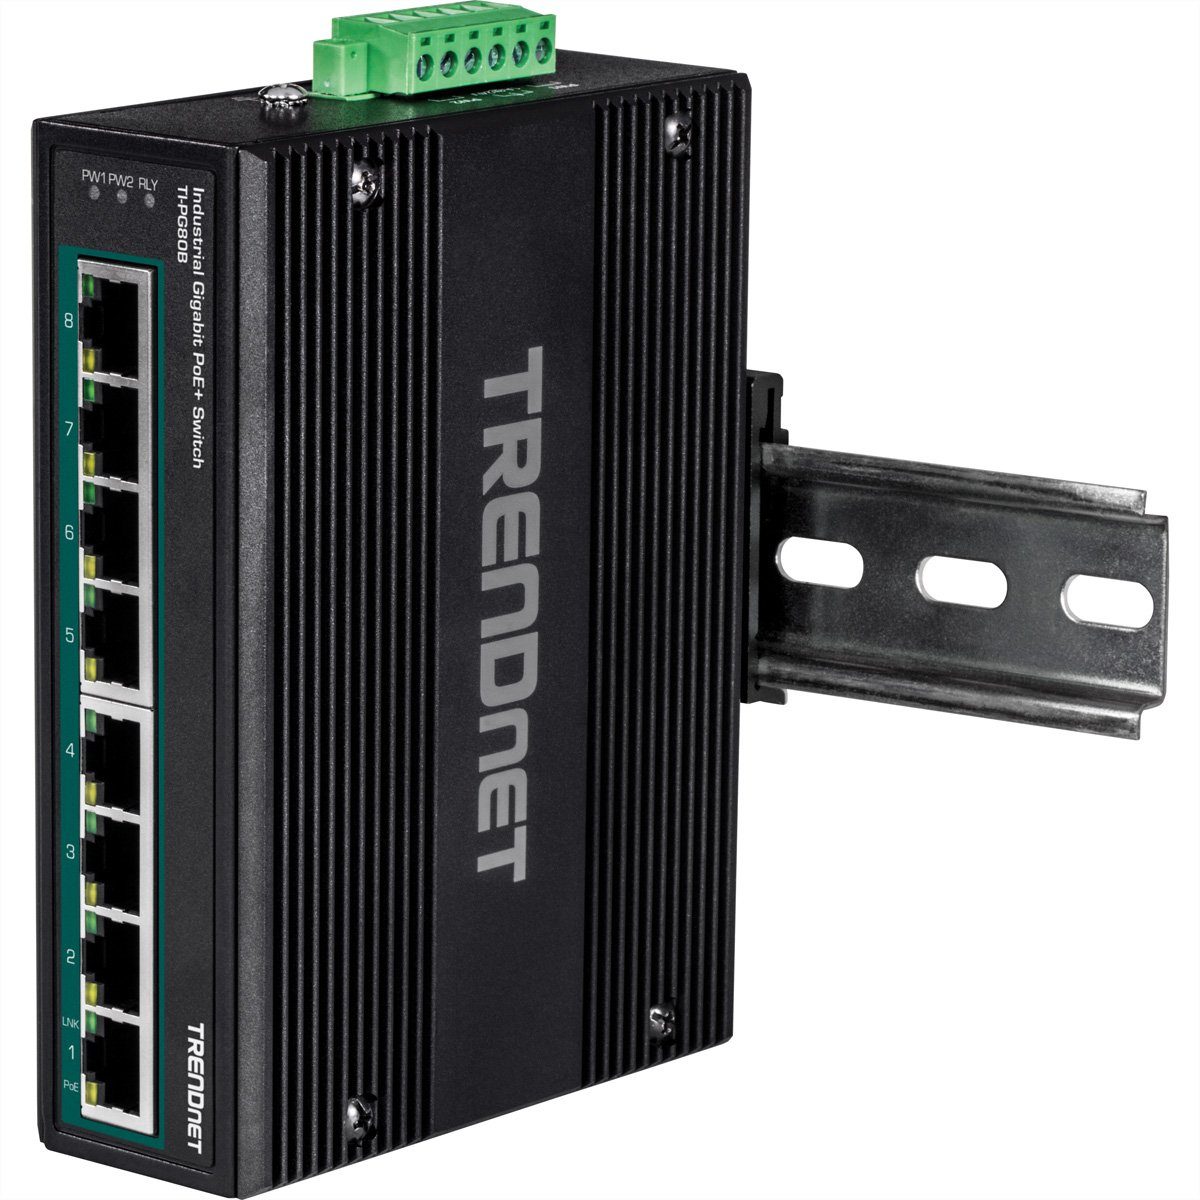 Trendnet TI-PG80B Netzwerk-Switch (24-56V) DIN-Rail Gigabit 8-Port PoE+ Industrial Switch